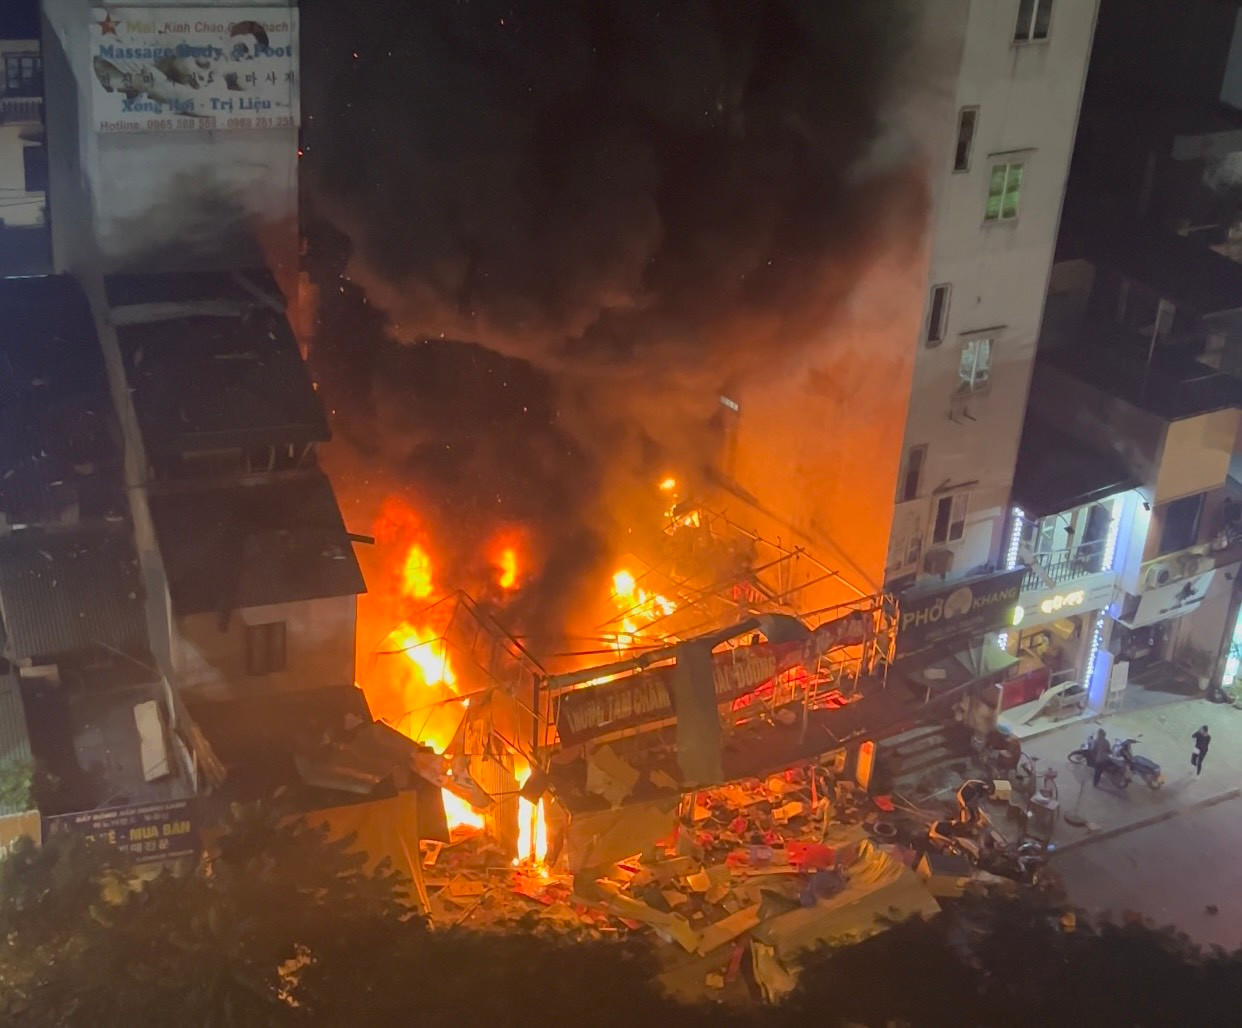 Cháy nổ là một trong những sự cố nguy hiểm nhất mà một thành phố có thể đối mặt. Nếu bạn muốn hiểu rõ hơn về những rủi ro này, hãy xem hình ảnh về vụ cháy nổ gần đây tại Hà Nội và phát triển ý thức cần thiết để bảo vệ mình và những người xung quanh.